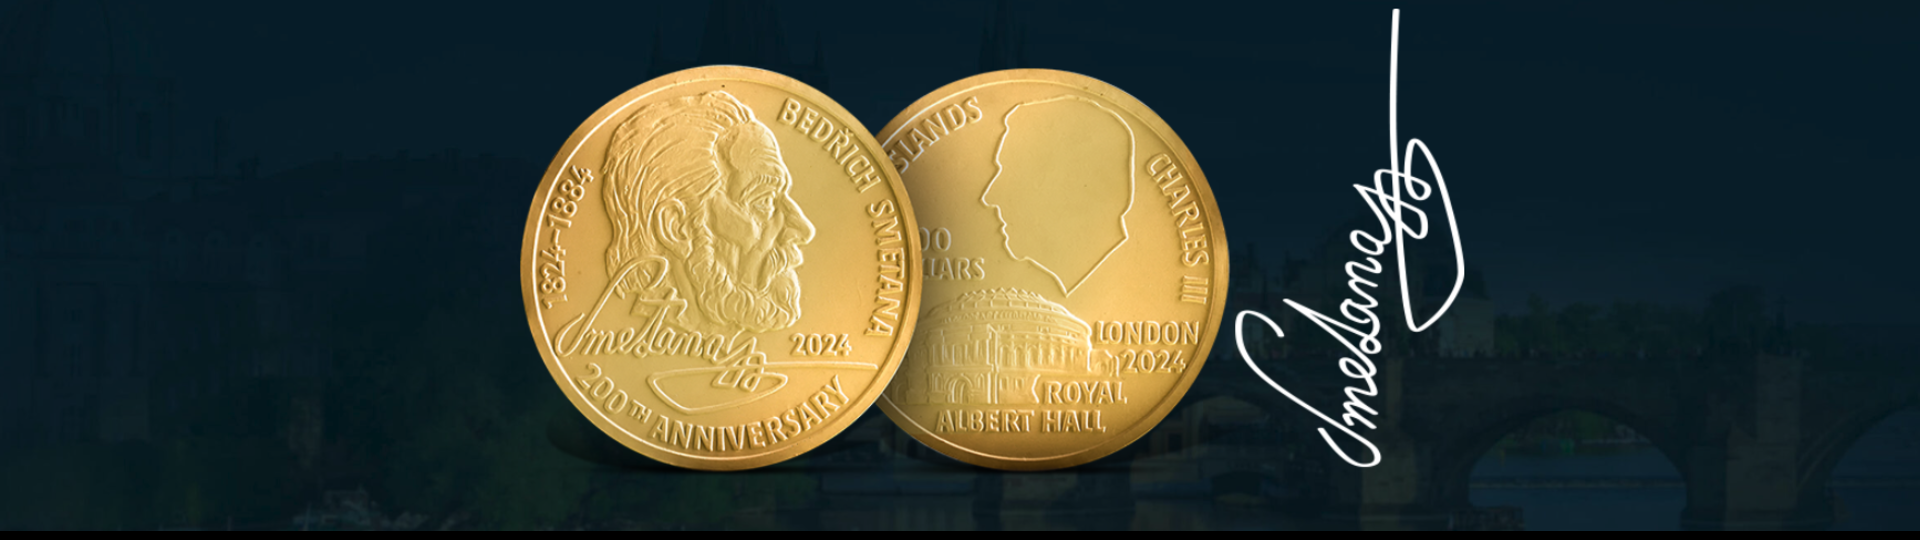 Investiční mince Bedřich Smetana pomáhá české kultuře